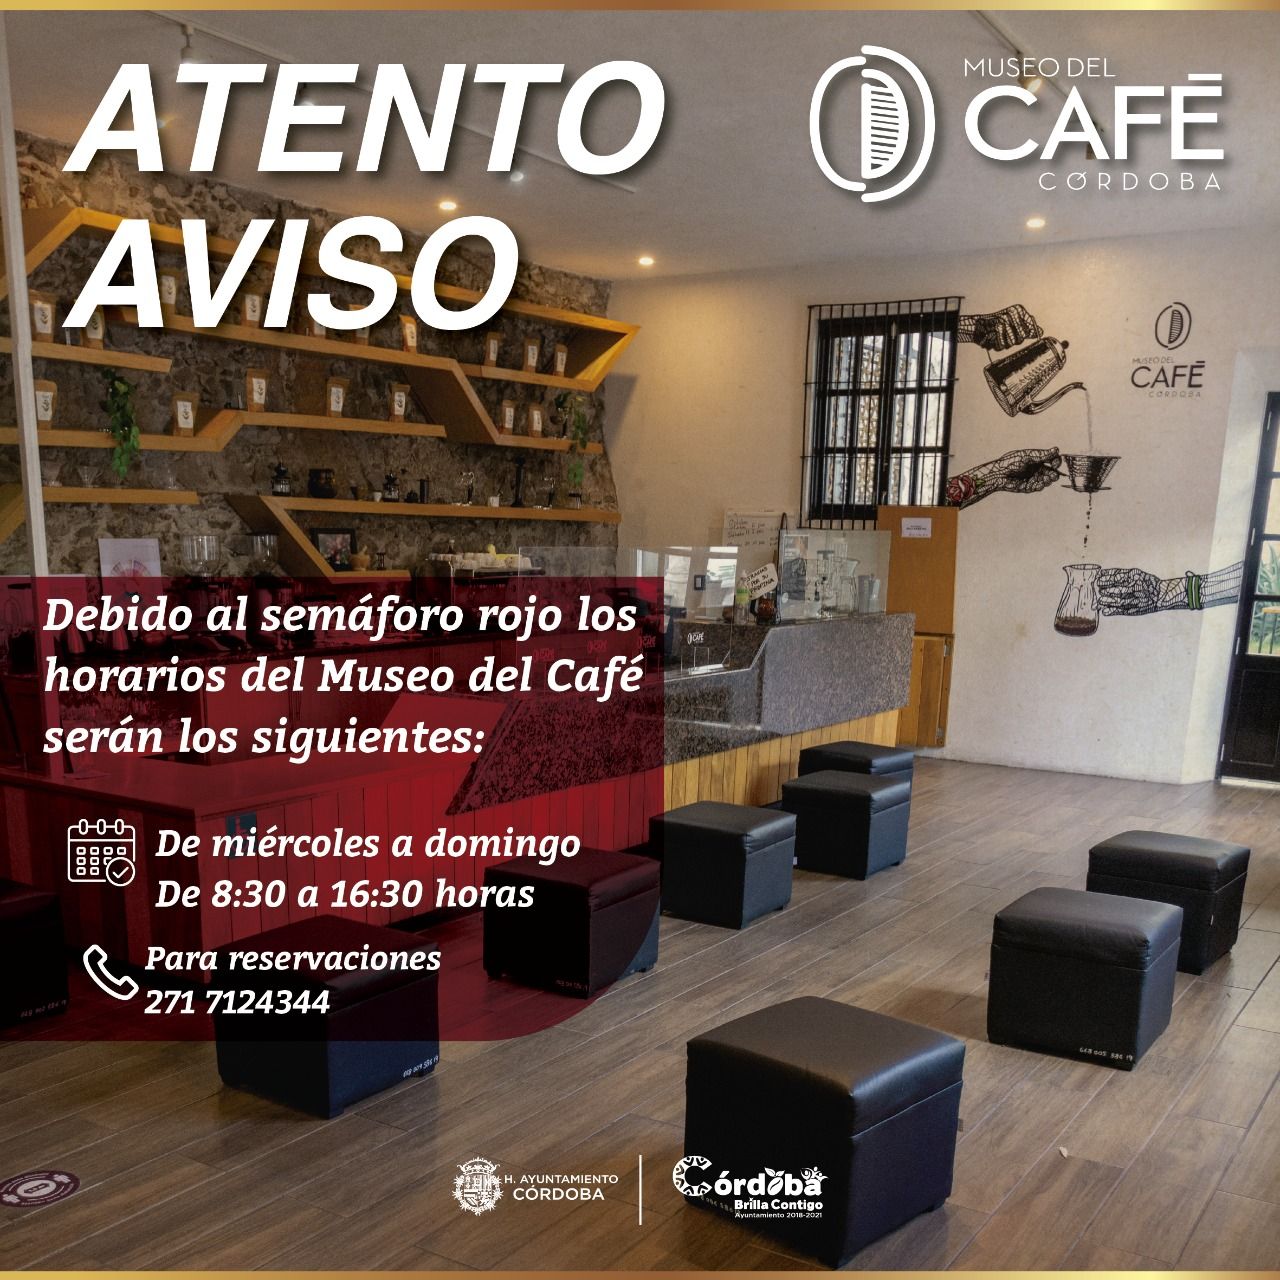 Museo del Café de Córdoba modifica horario de atención por situación epidemiológica 